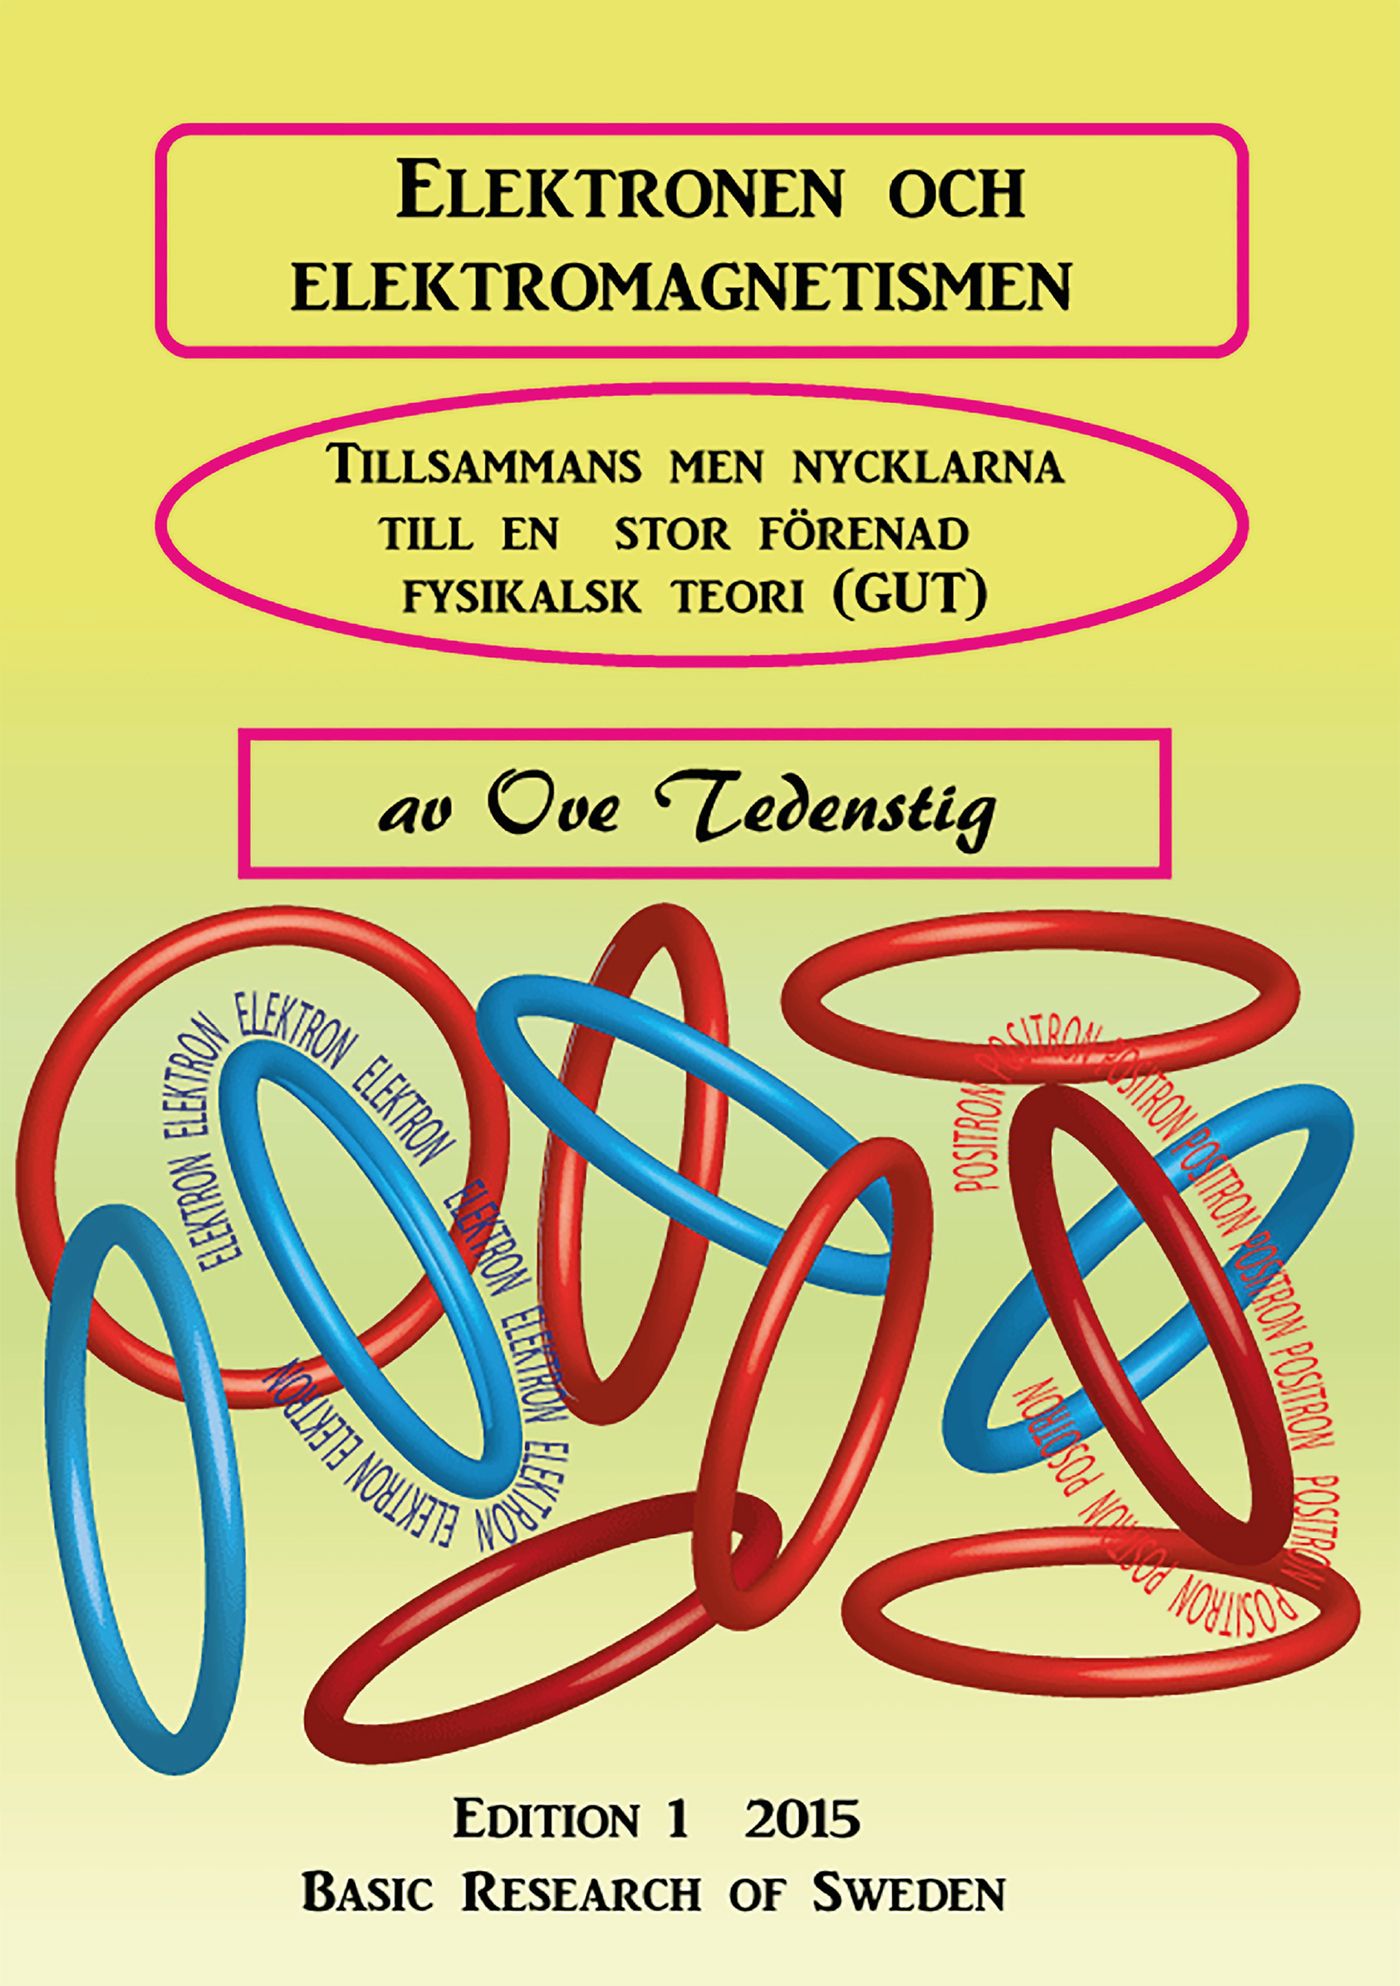 Elektronen och Elektromagnetismen, e-bok av Ove Tedenstig